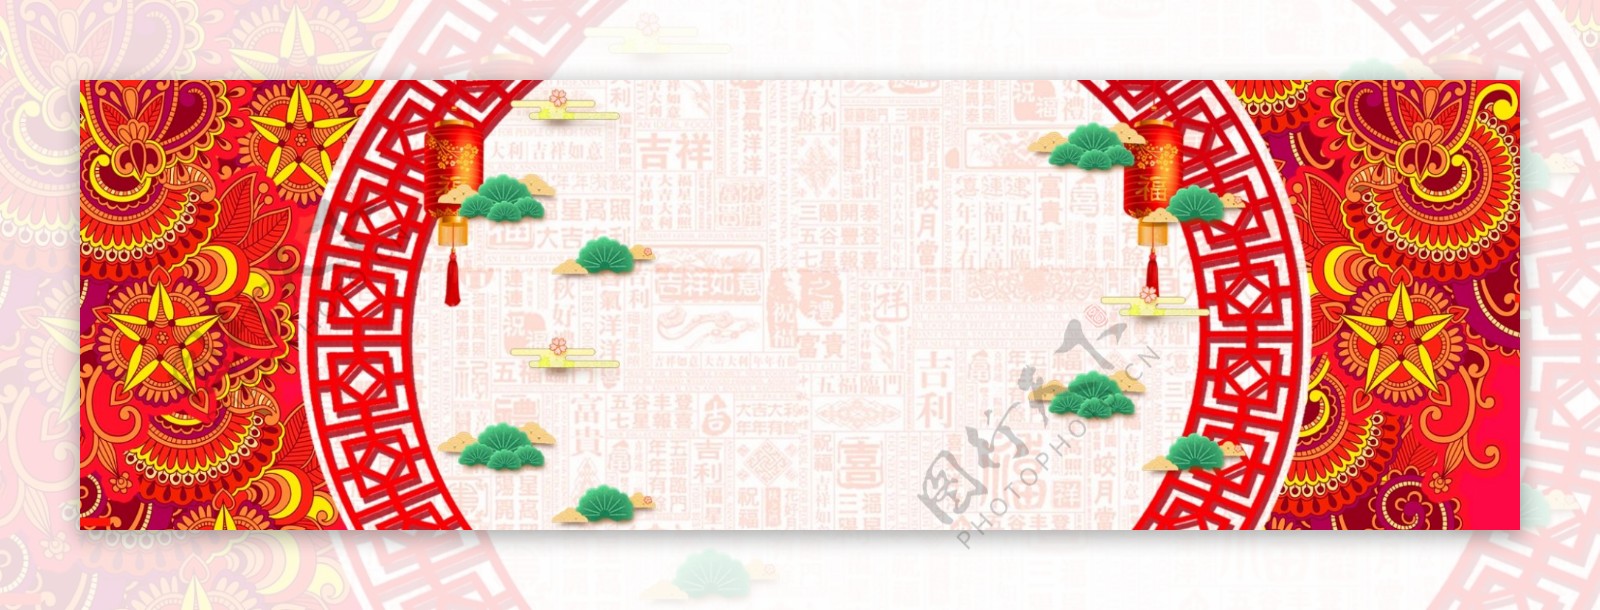 花朵喜庆传统节日猪年banner背景